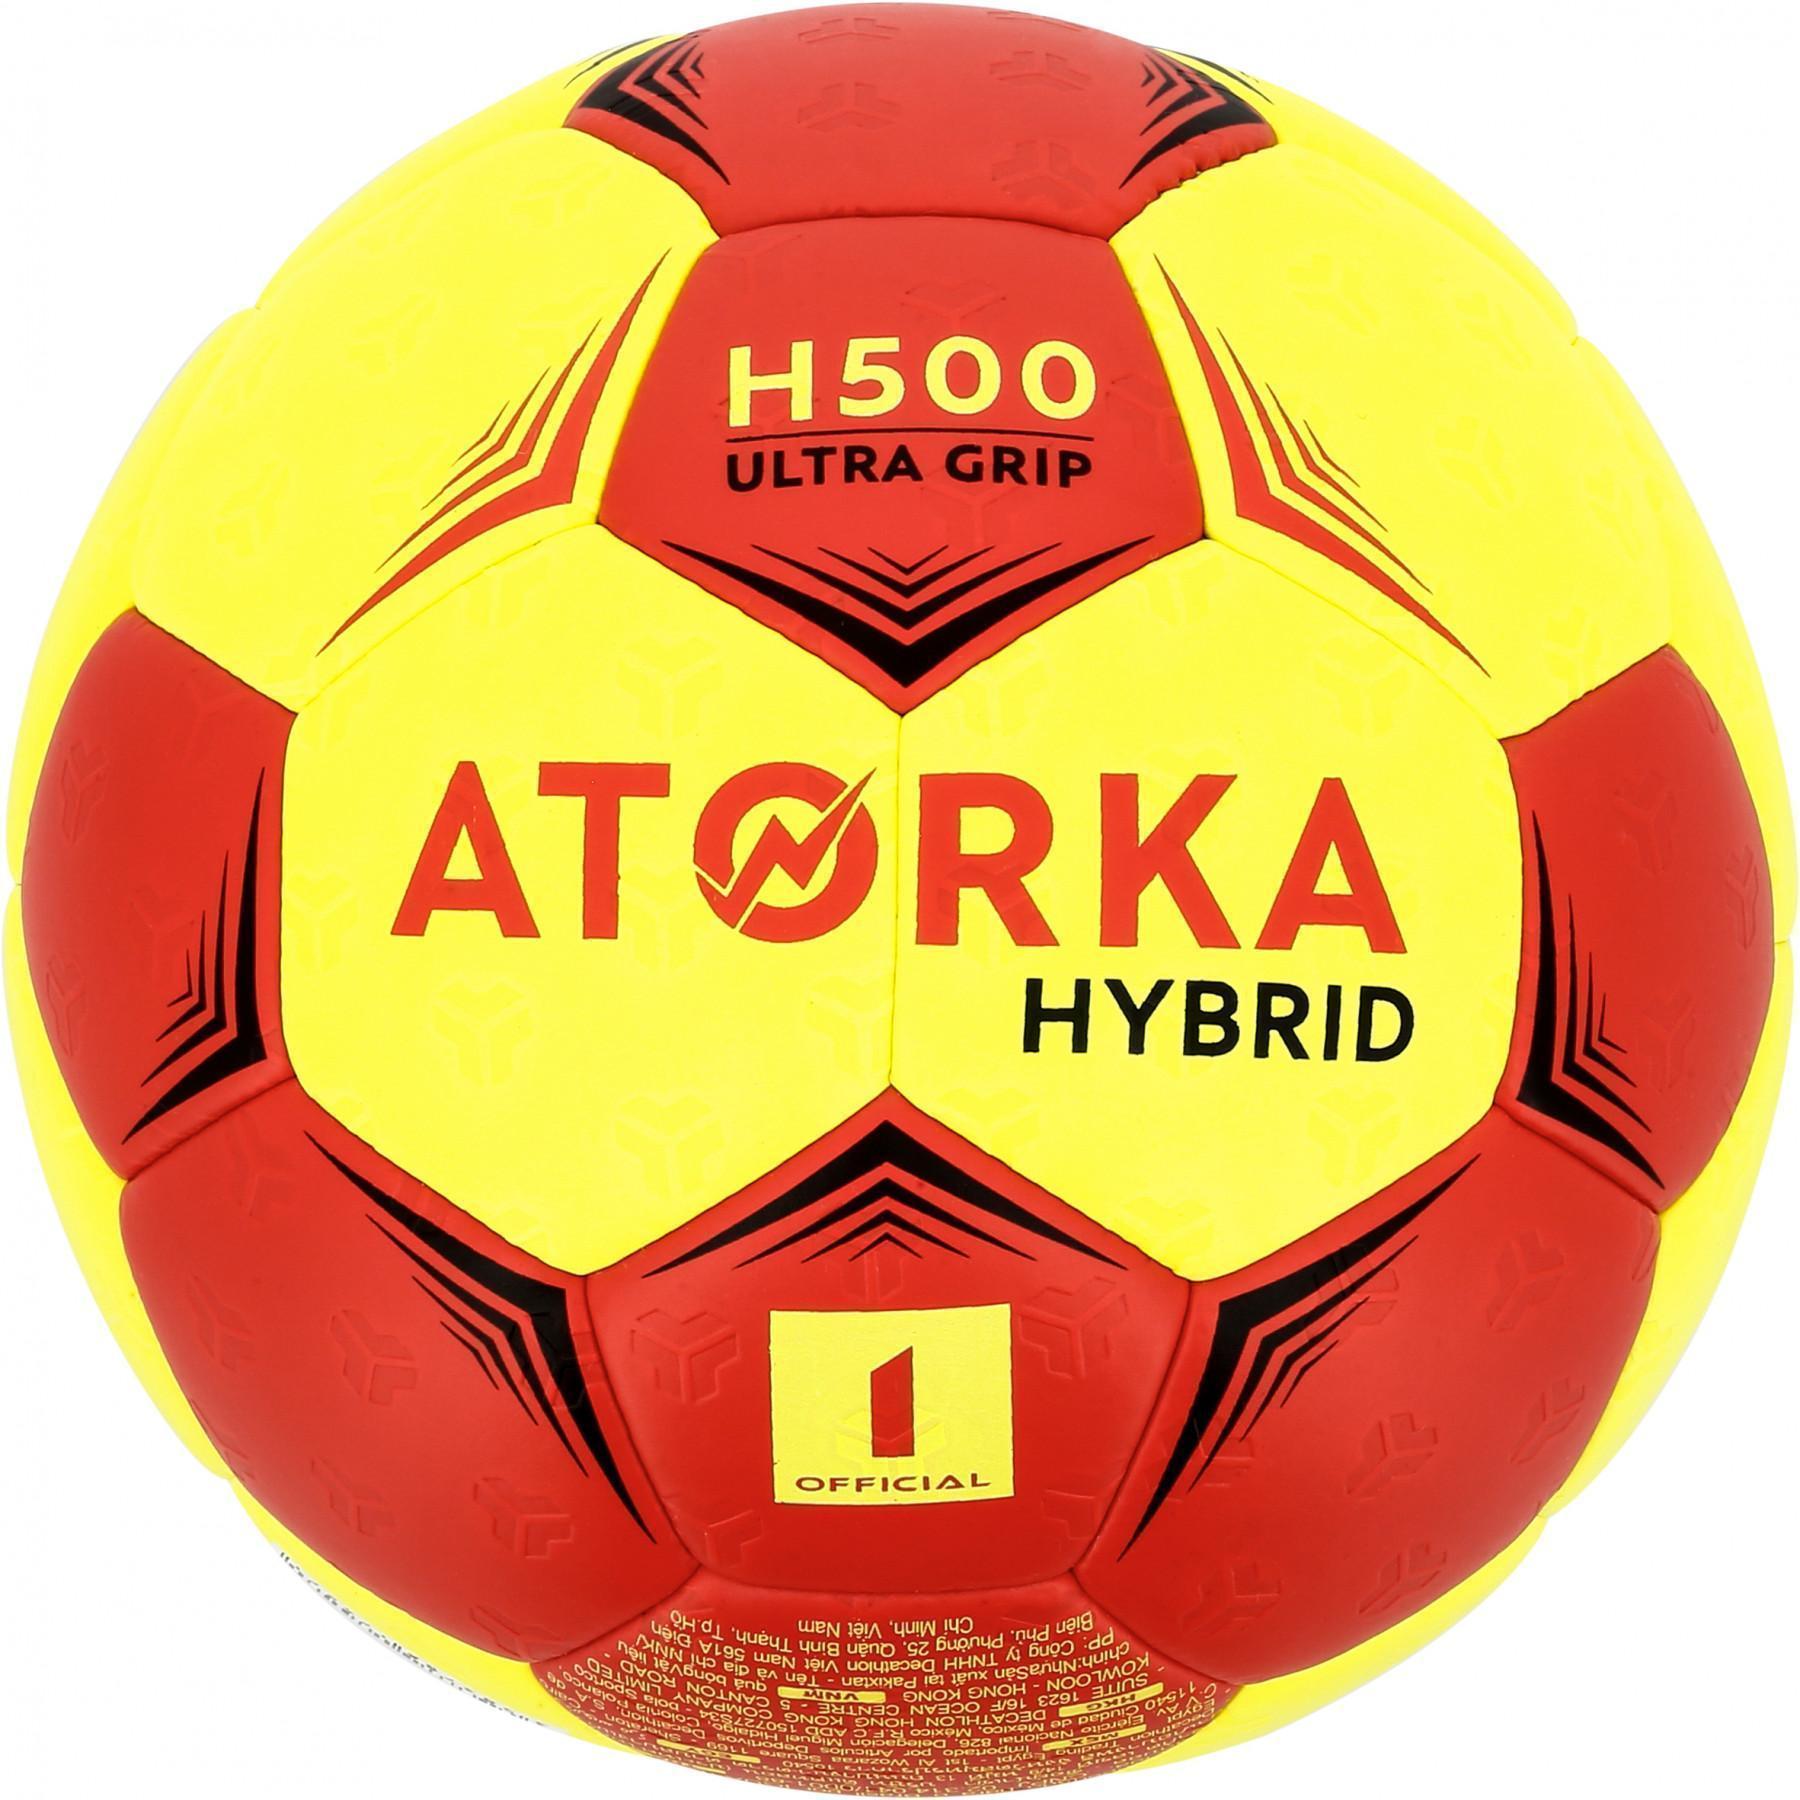 Children's ball Atorka H500 - Taille 1